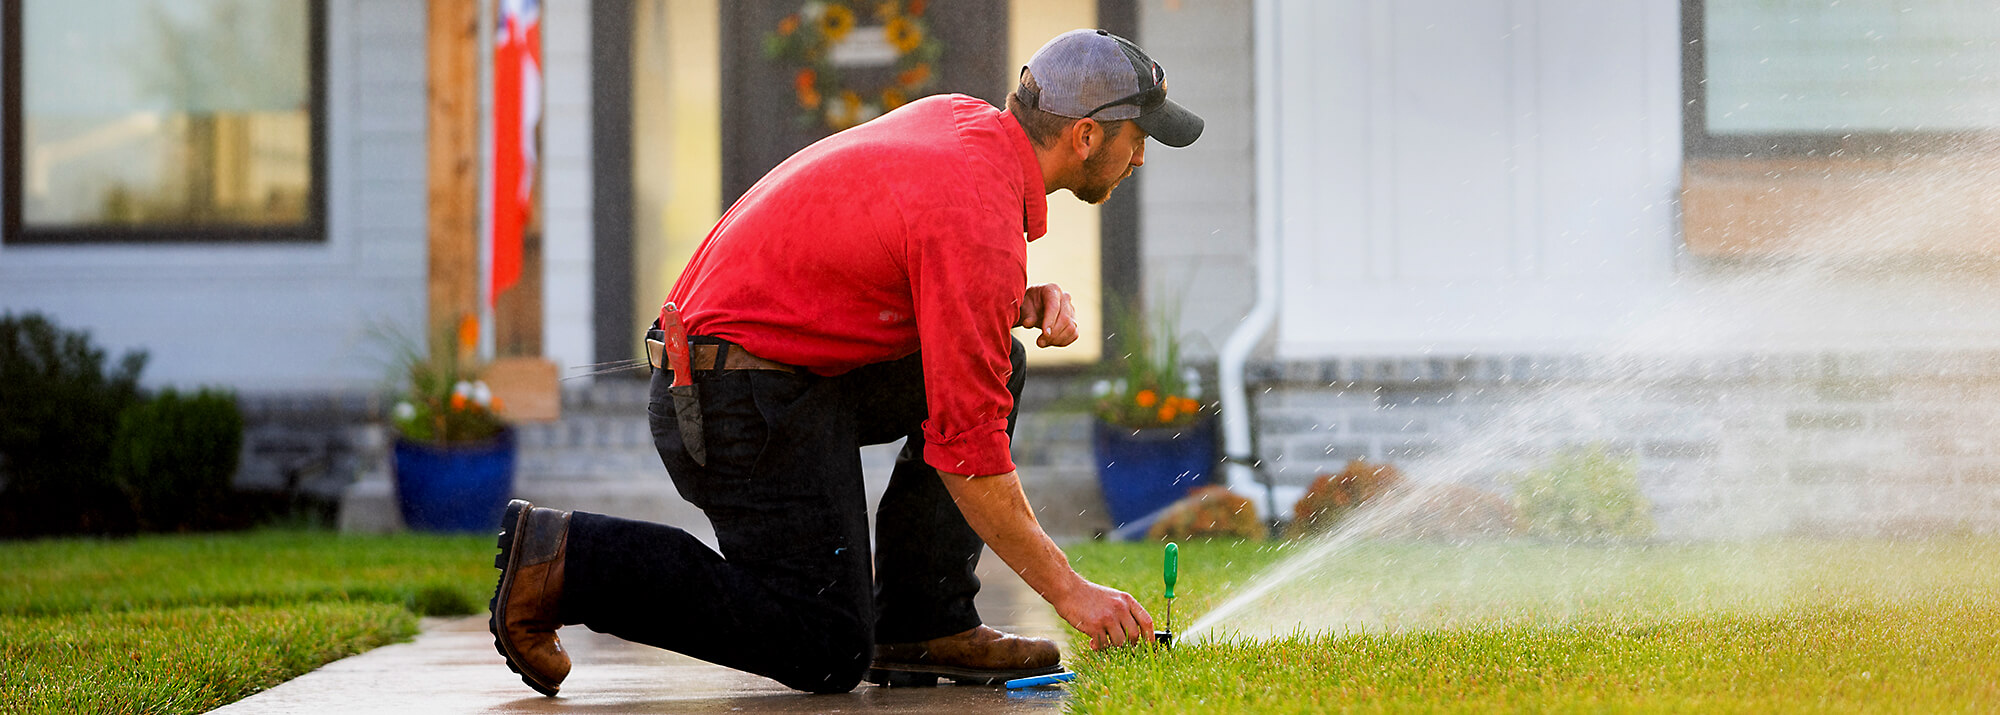 Reddi Technician Repairing Water Sprinkler in Yard